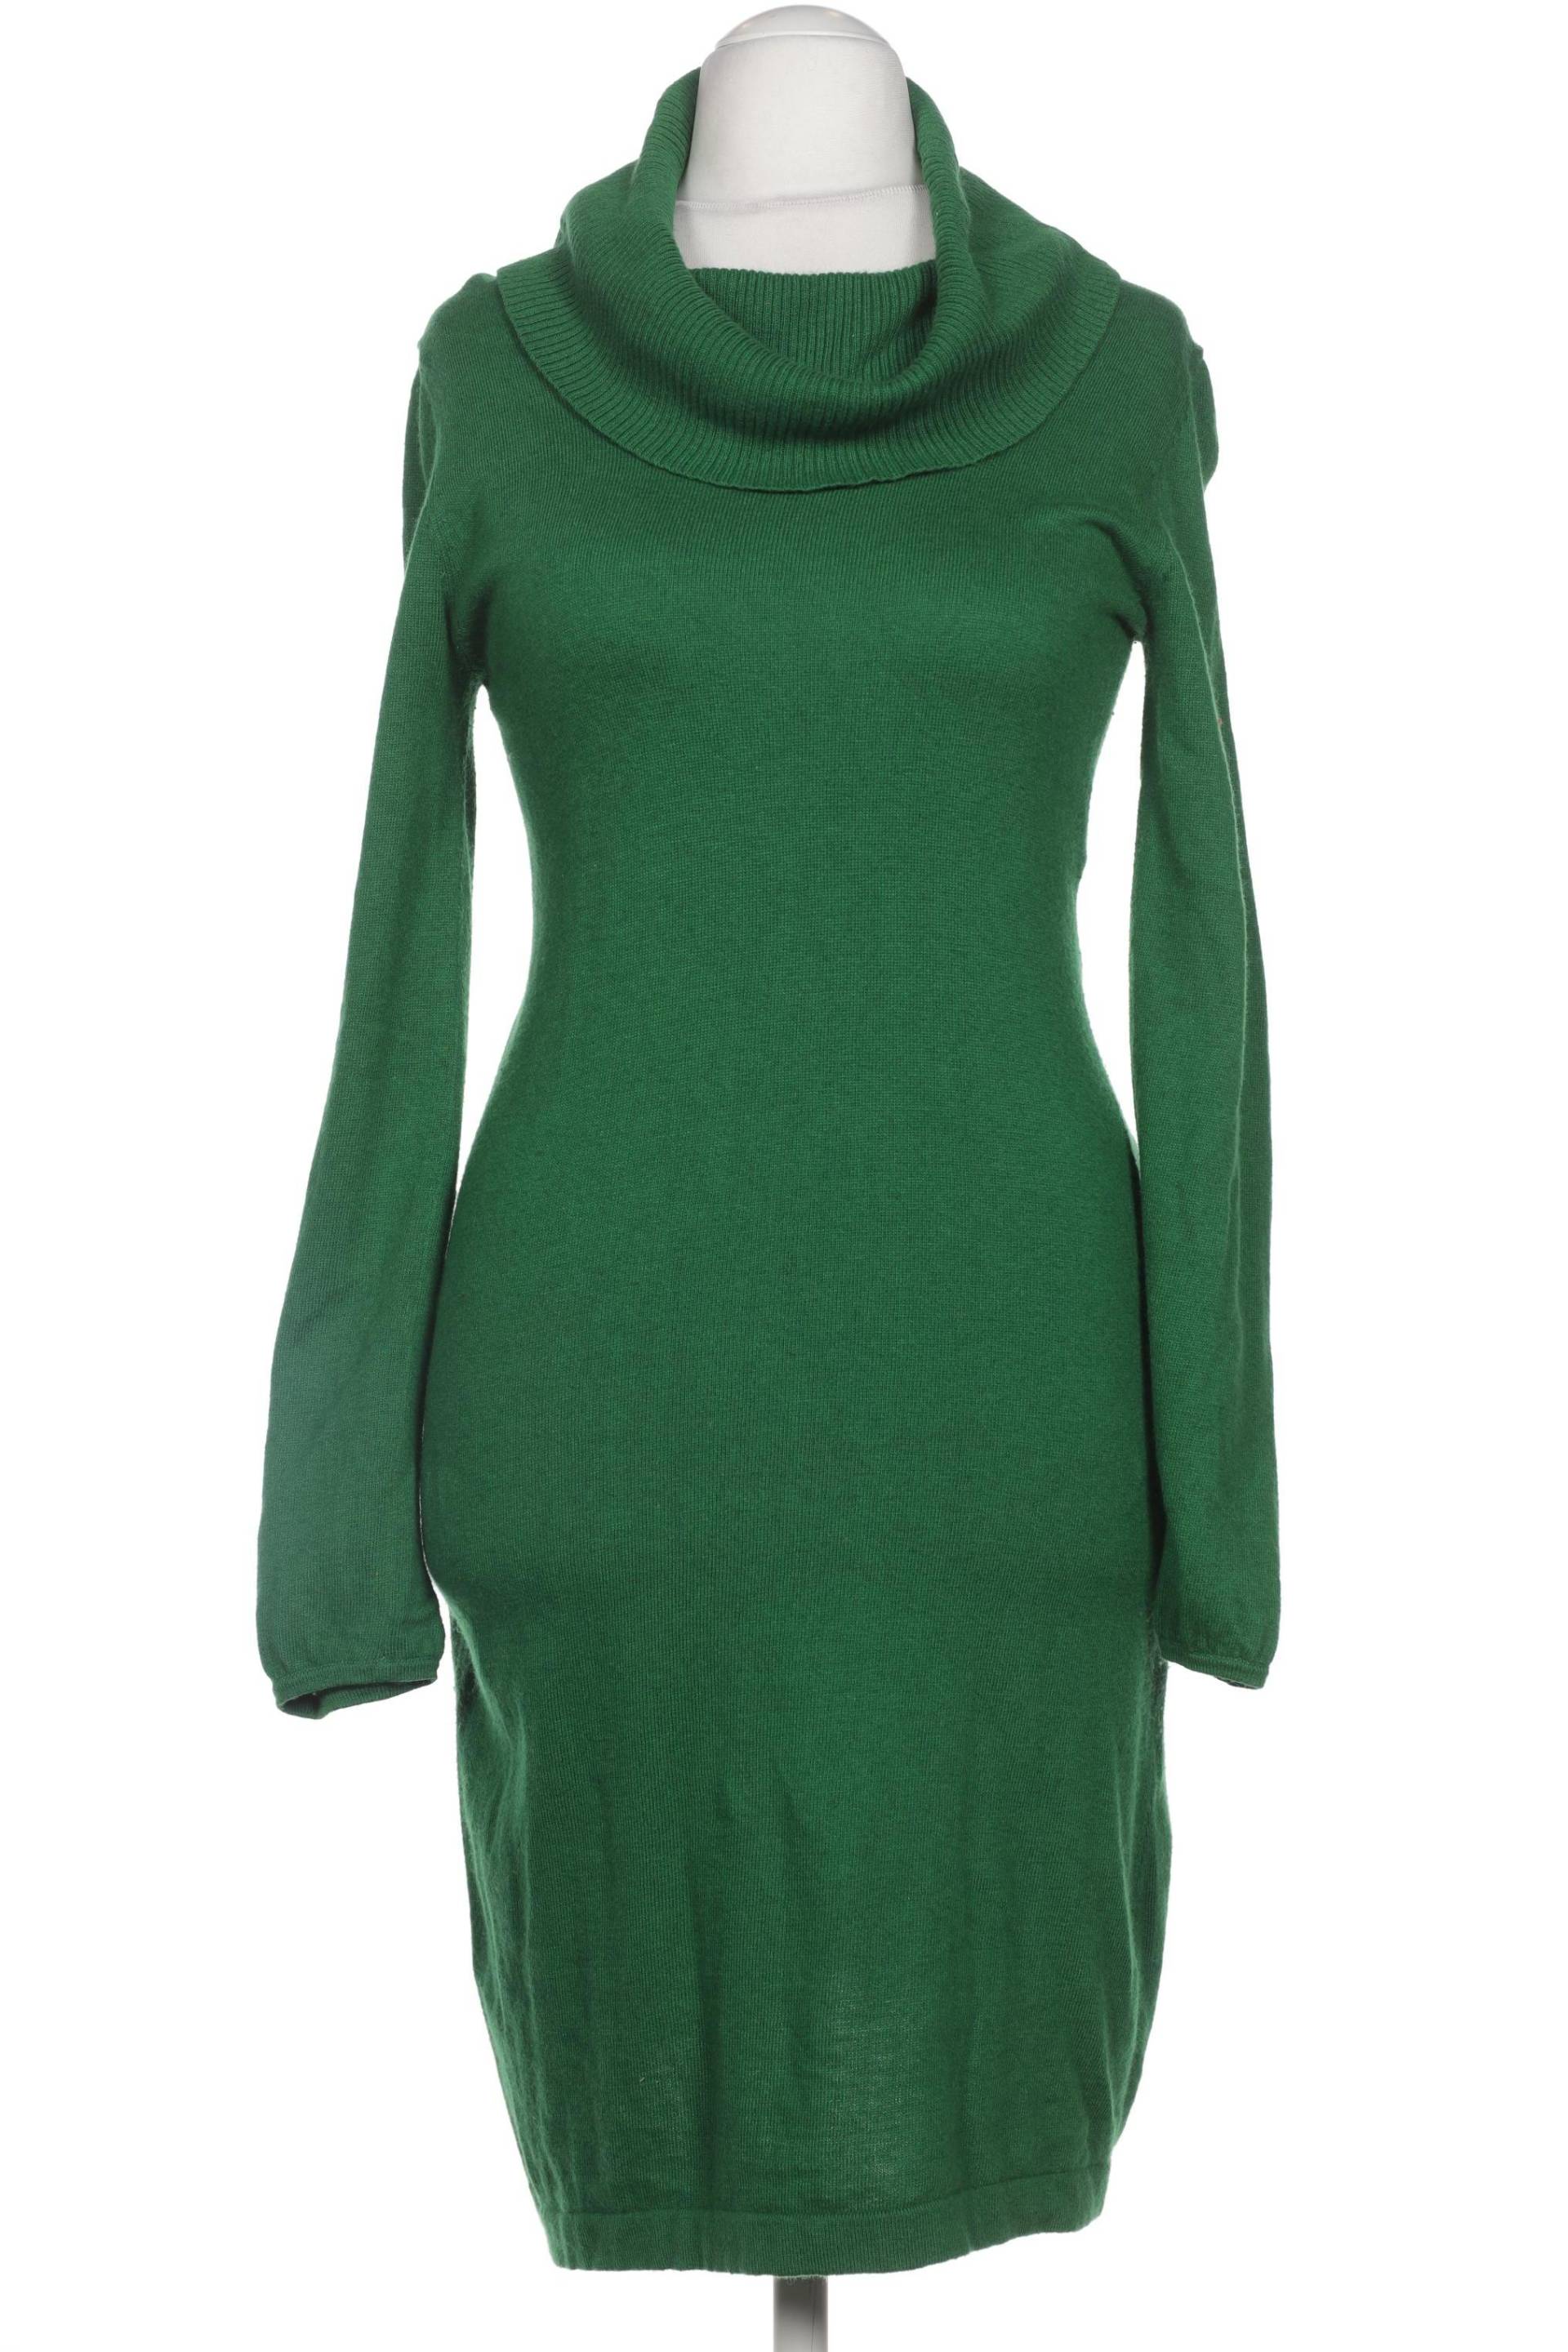 Boden Damen Kleid, grün, Gr. 10 von Boden